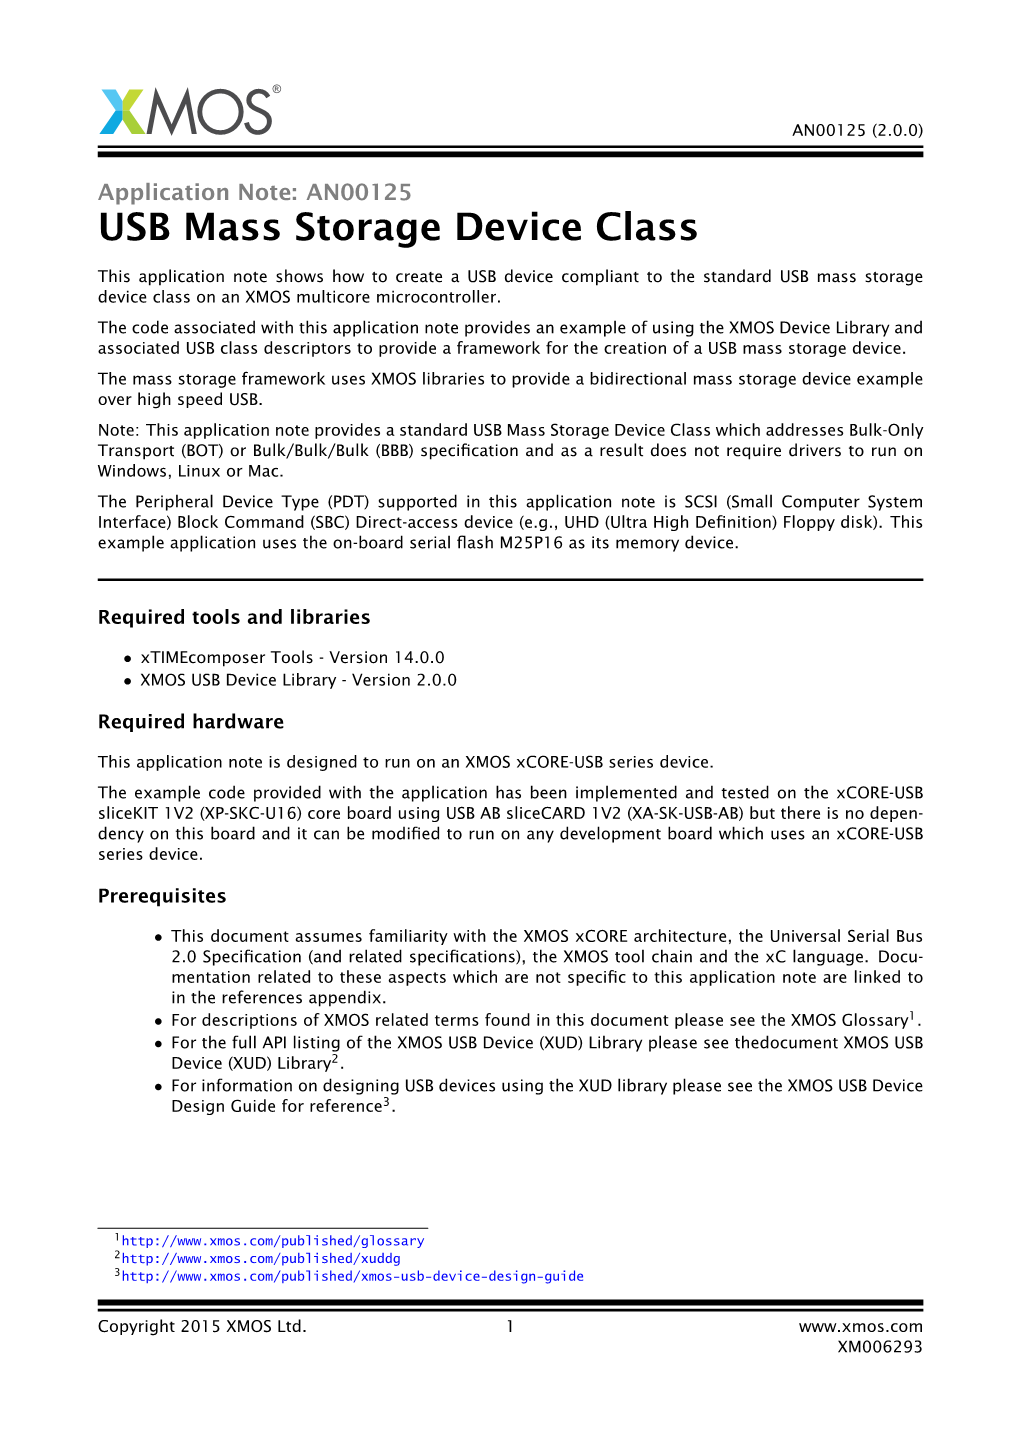 USB Mass Storage Device Class